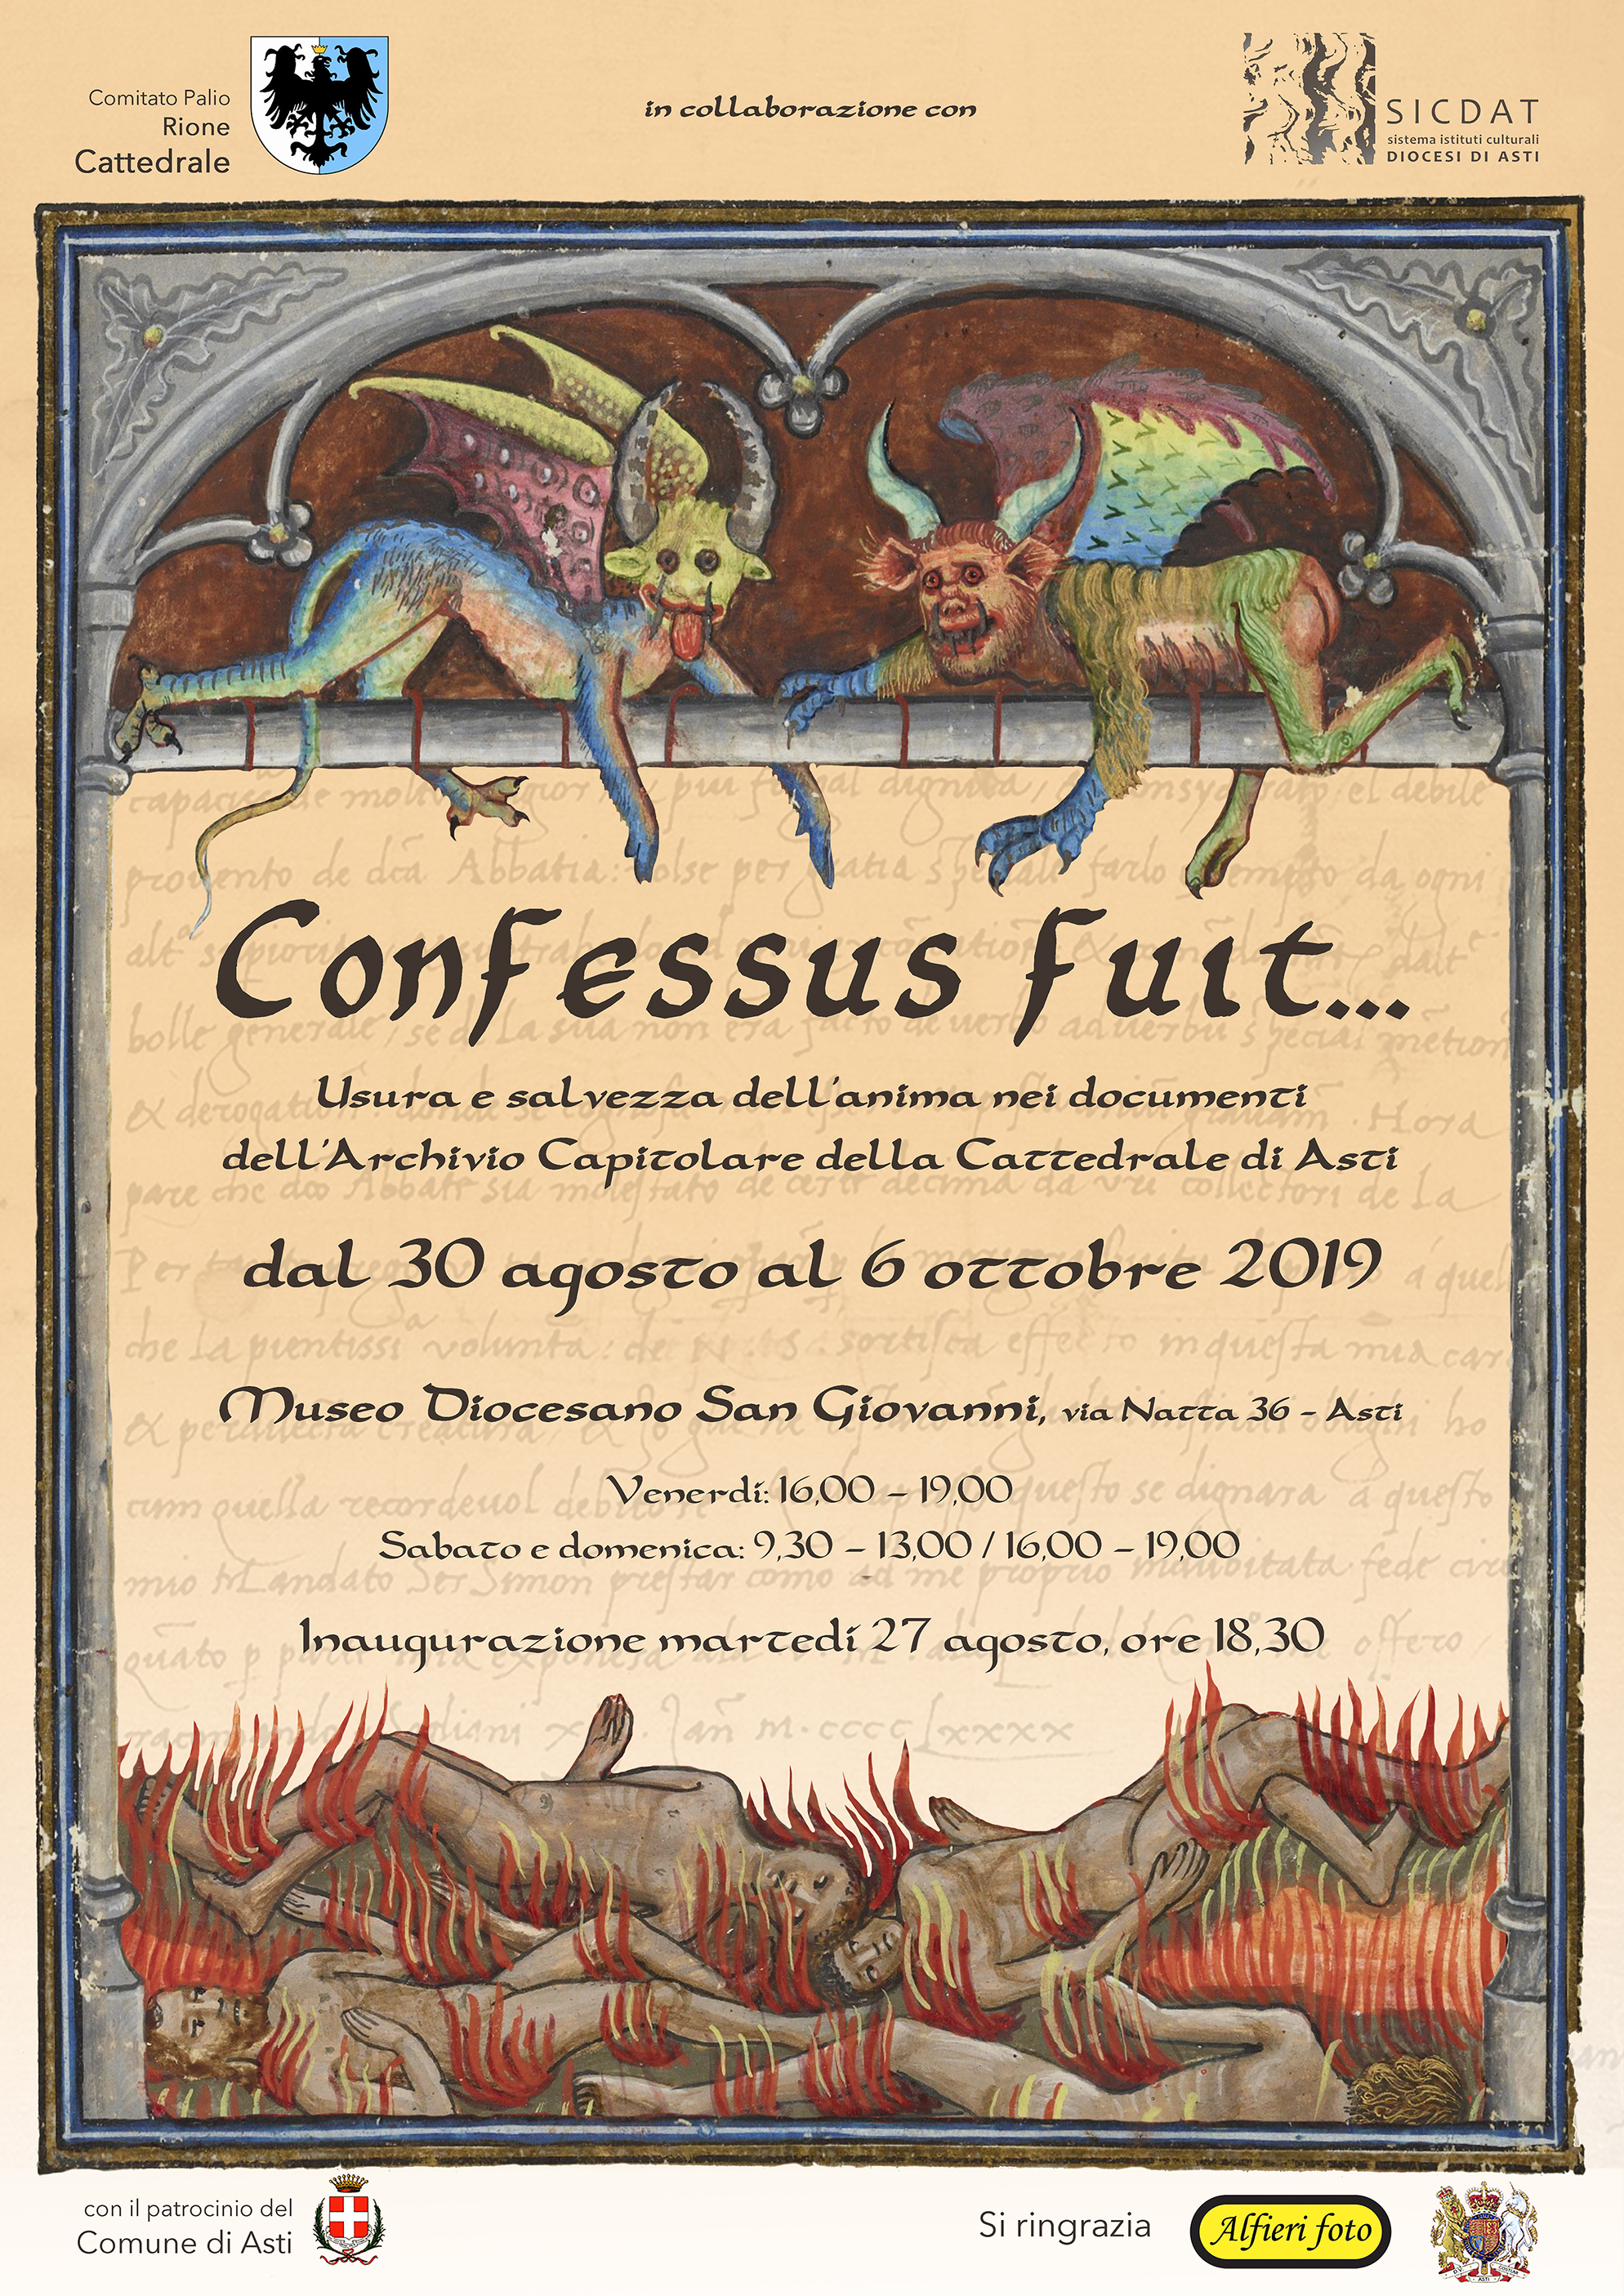 Domani il Rione Cattedrale inaugura la mostra Confessus fuit